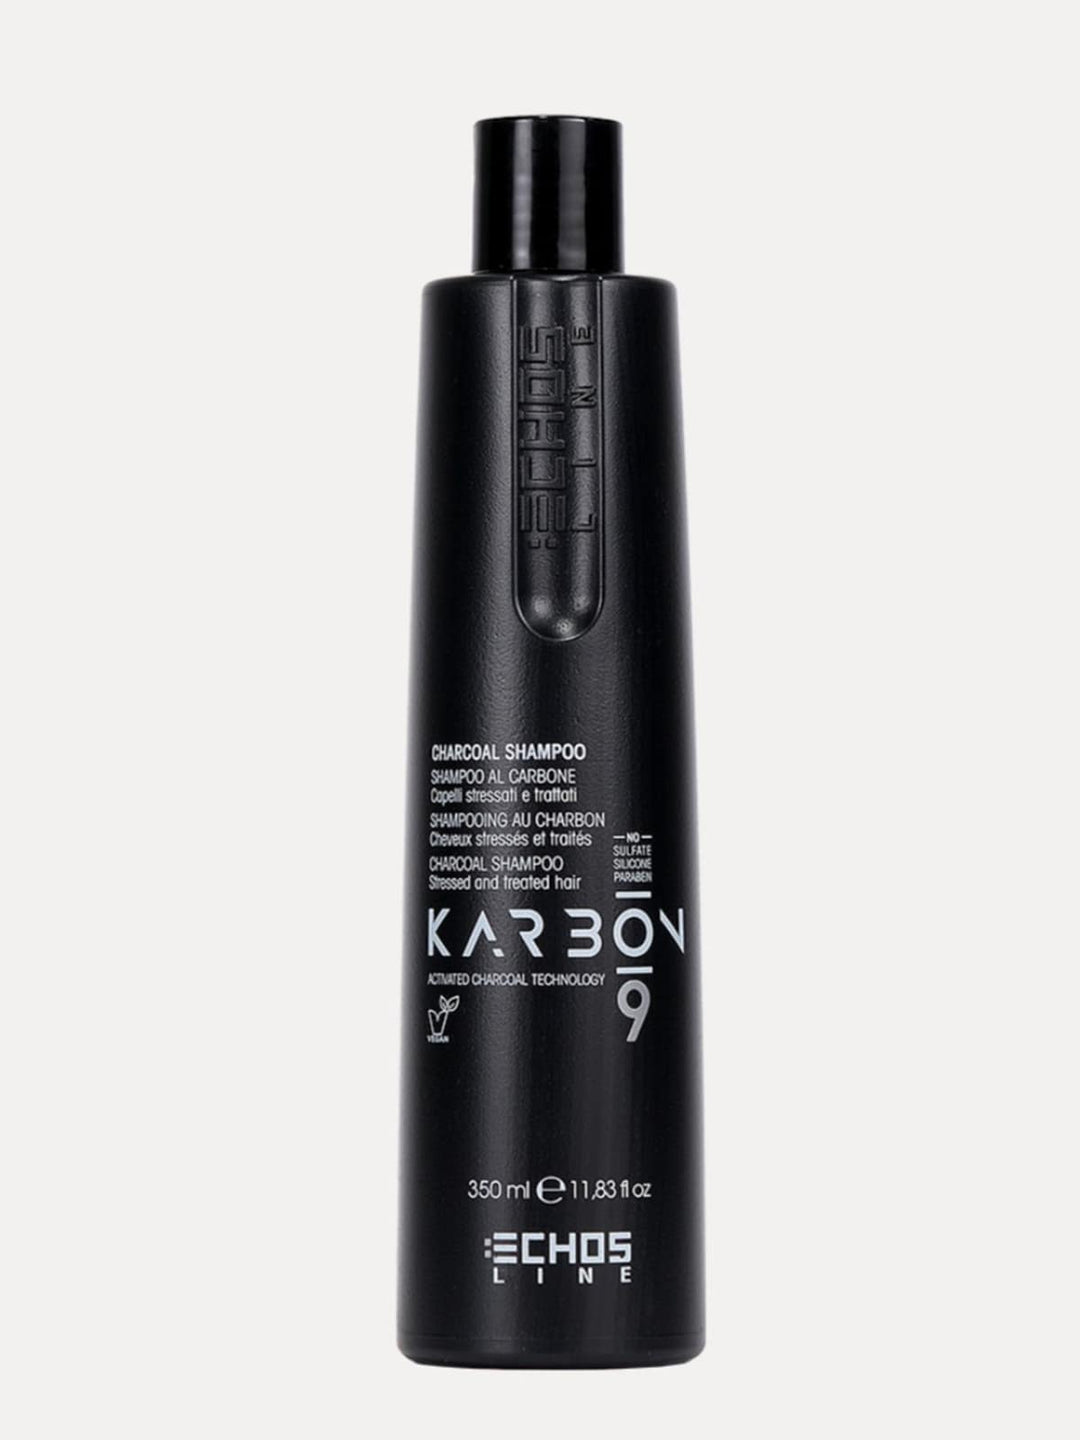 Charcoal Shampoo | Echosline